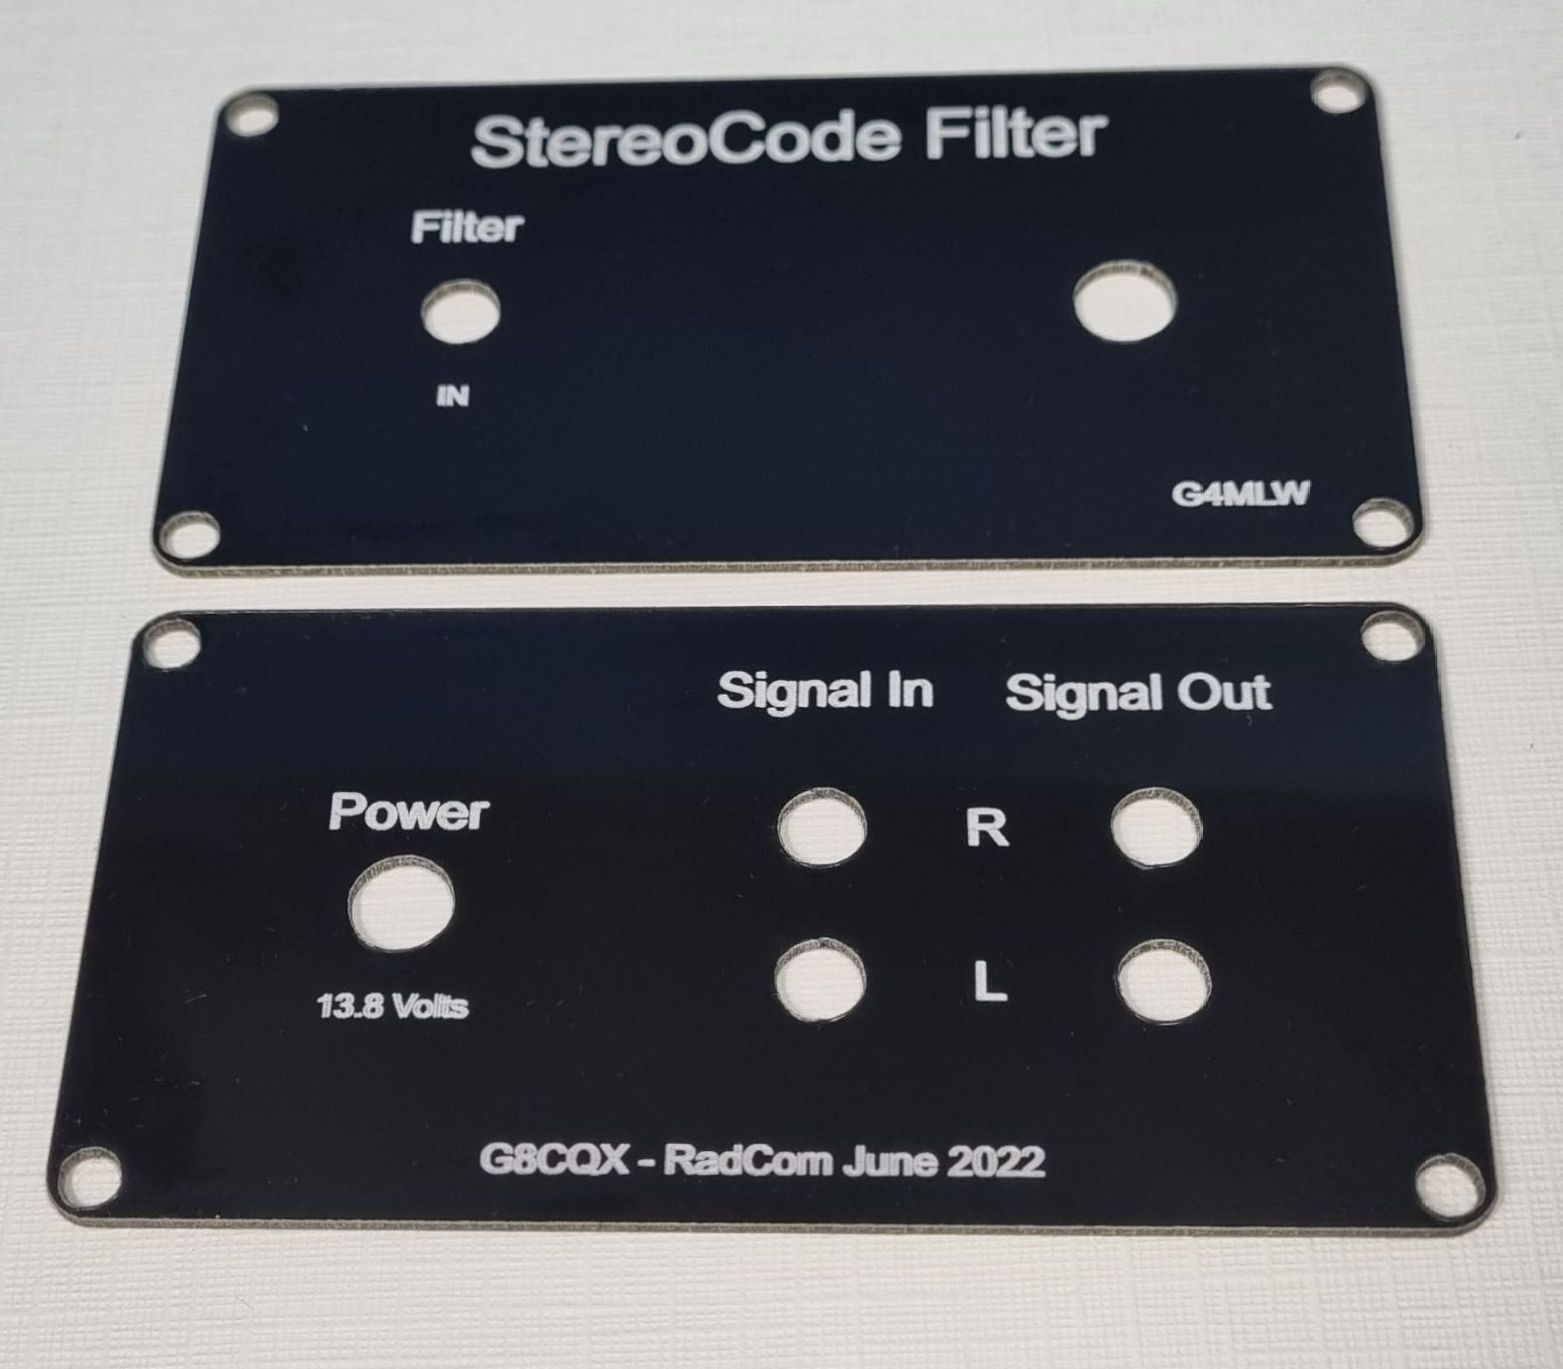 StereoCode Filter V2 panels